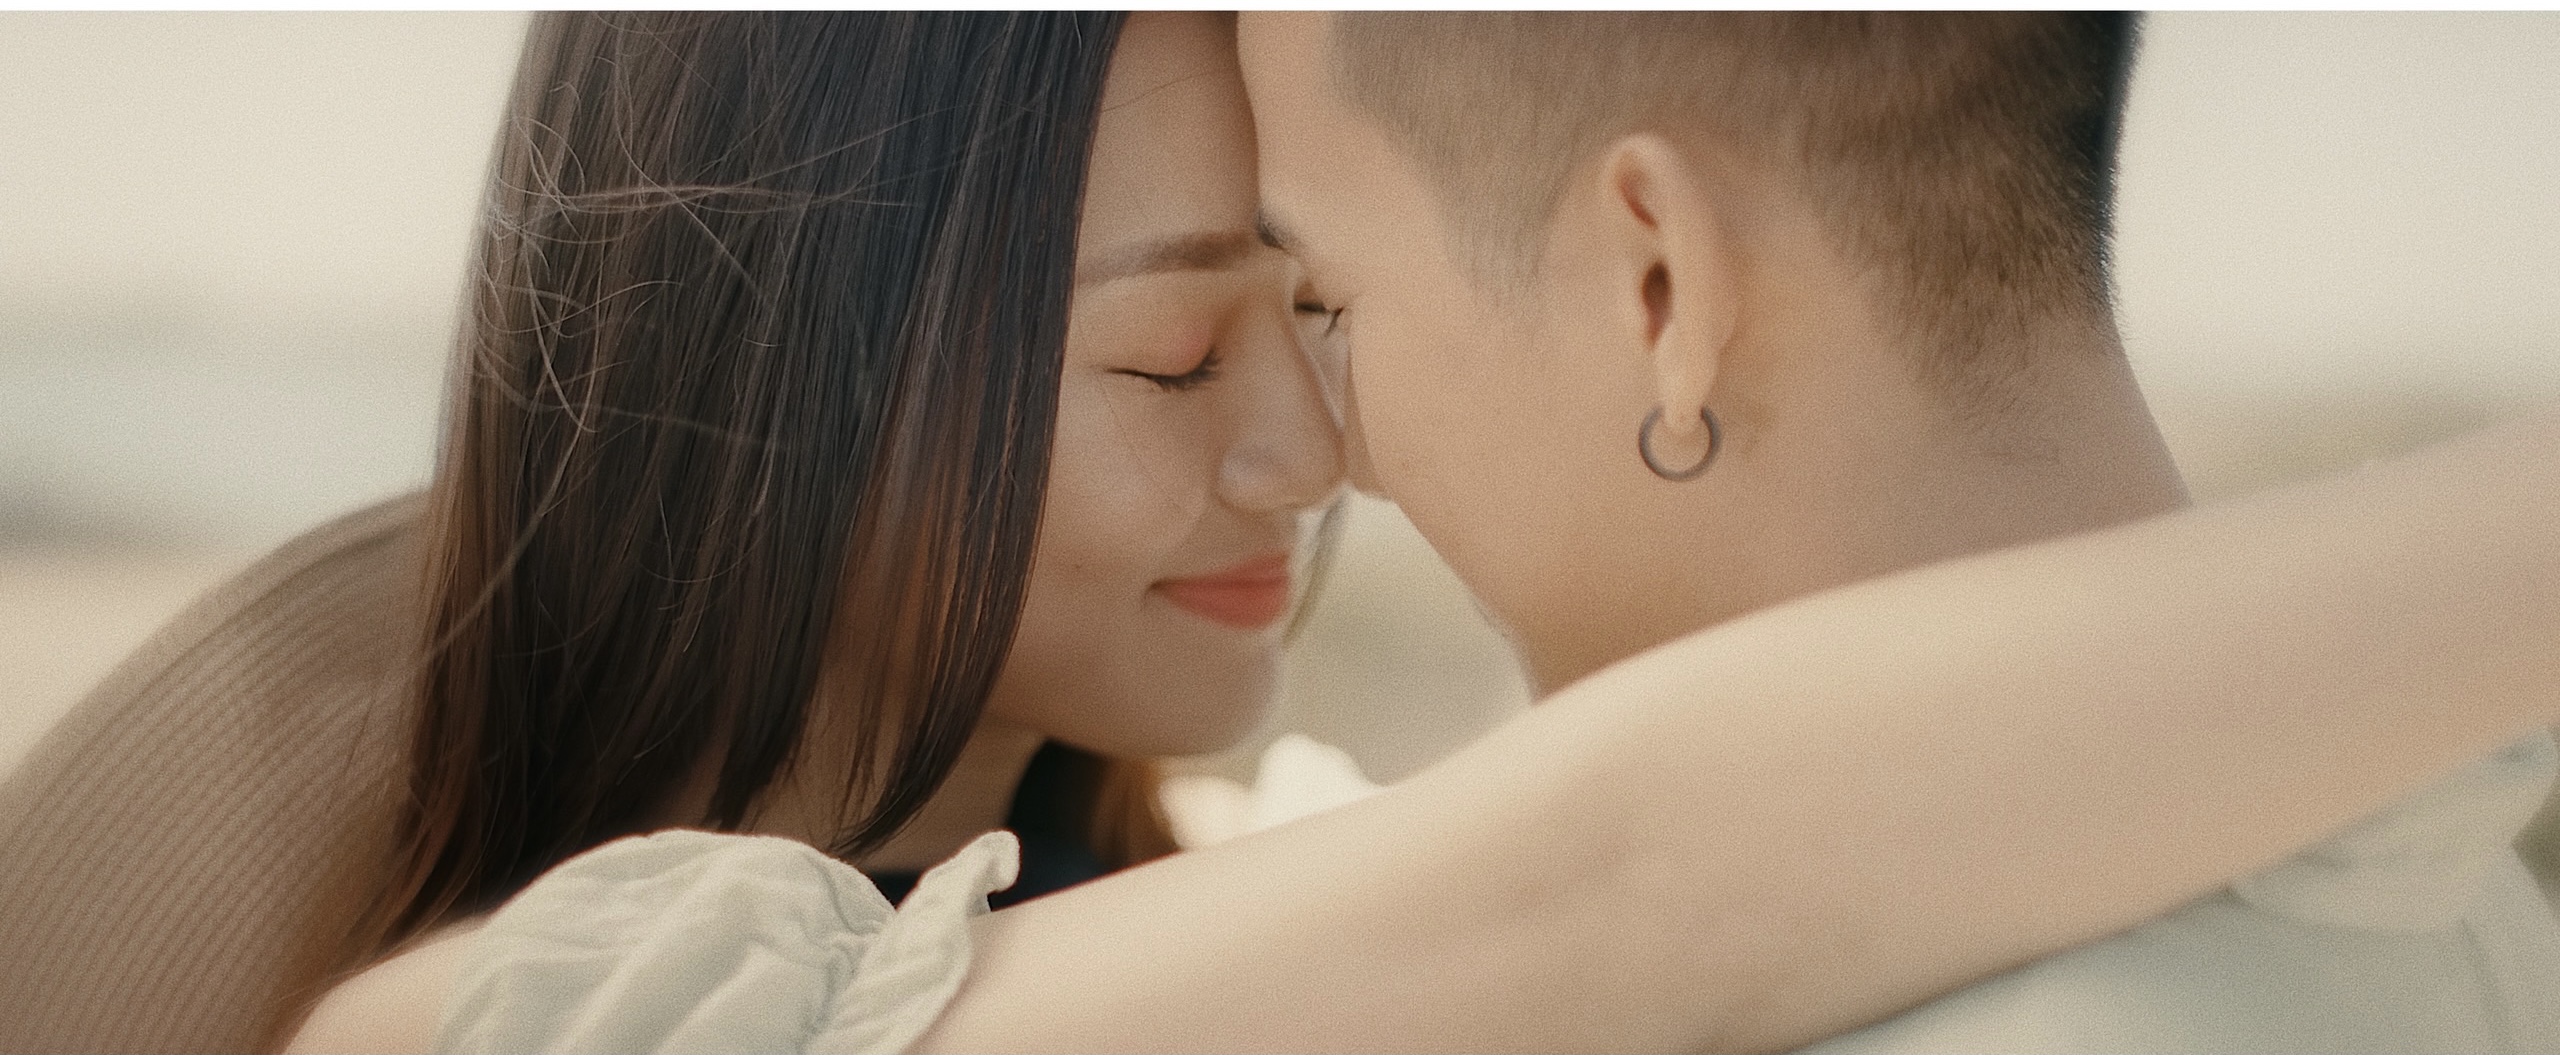 Các cảnh quay trong MV phần lớn được thực hiện tại một bãi biển thơ mộng với những khoảnh khắc lãng mạn của nữ chính cùng bạn trai mới. 